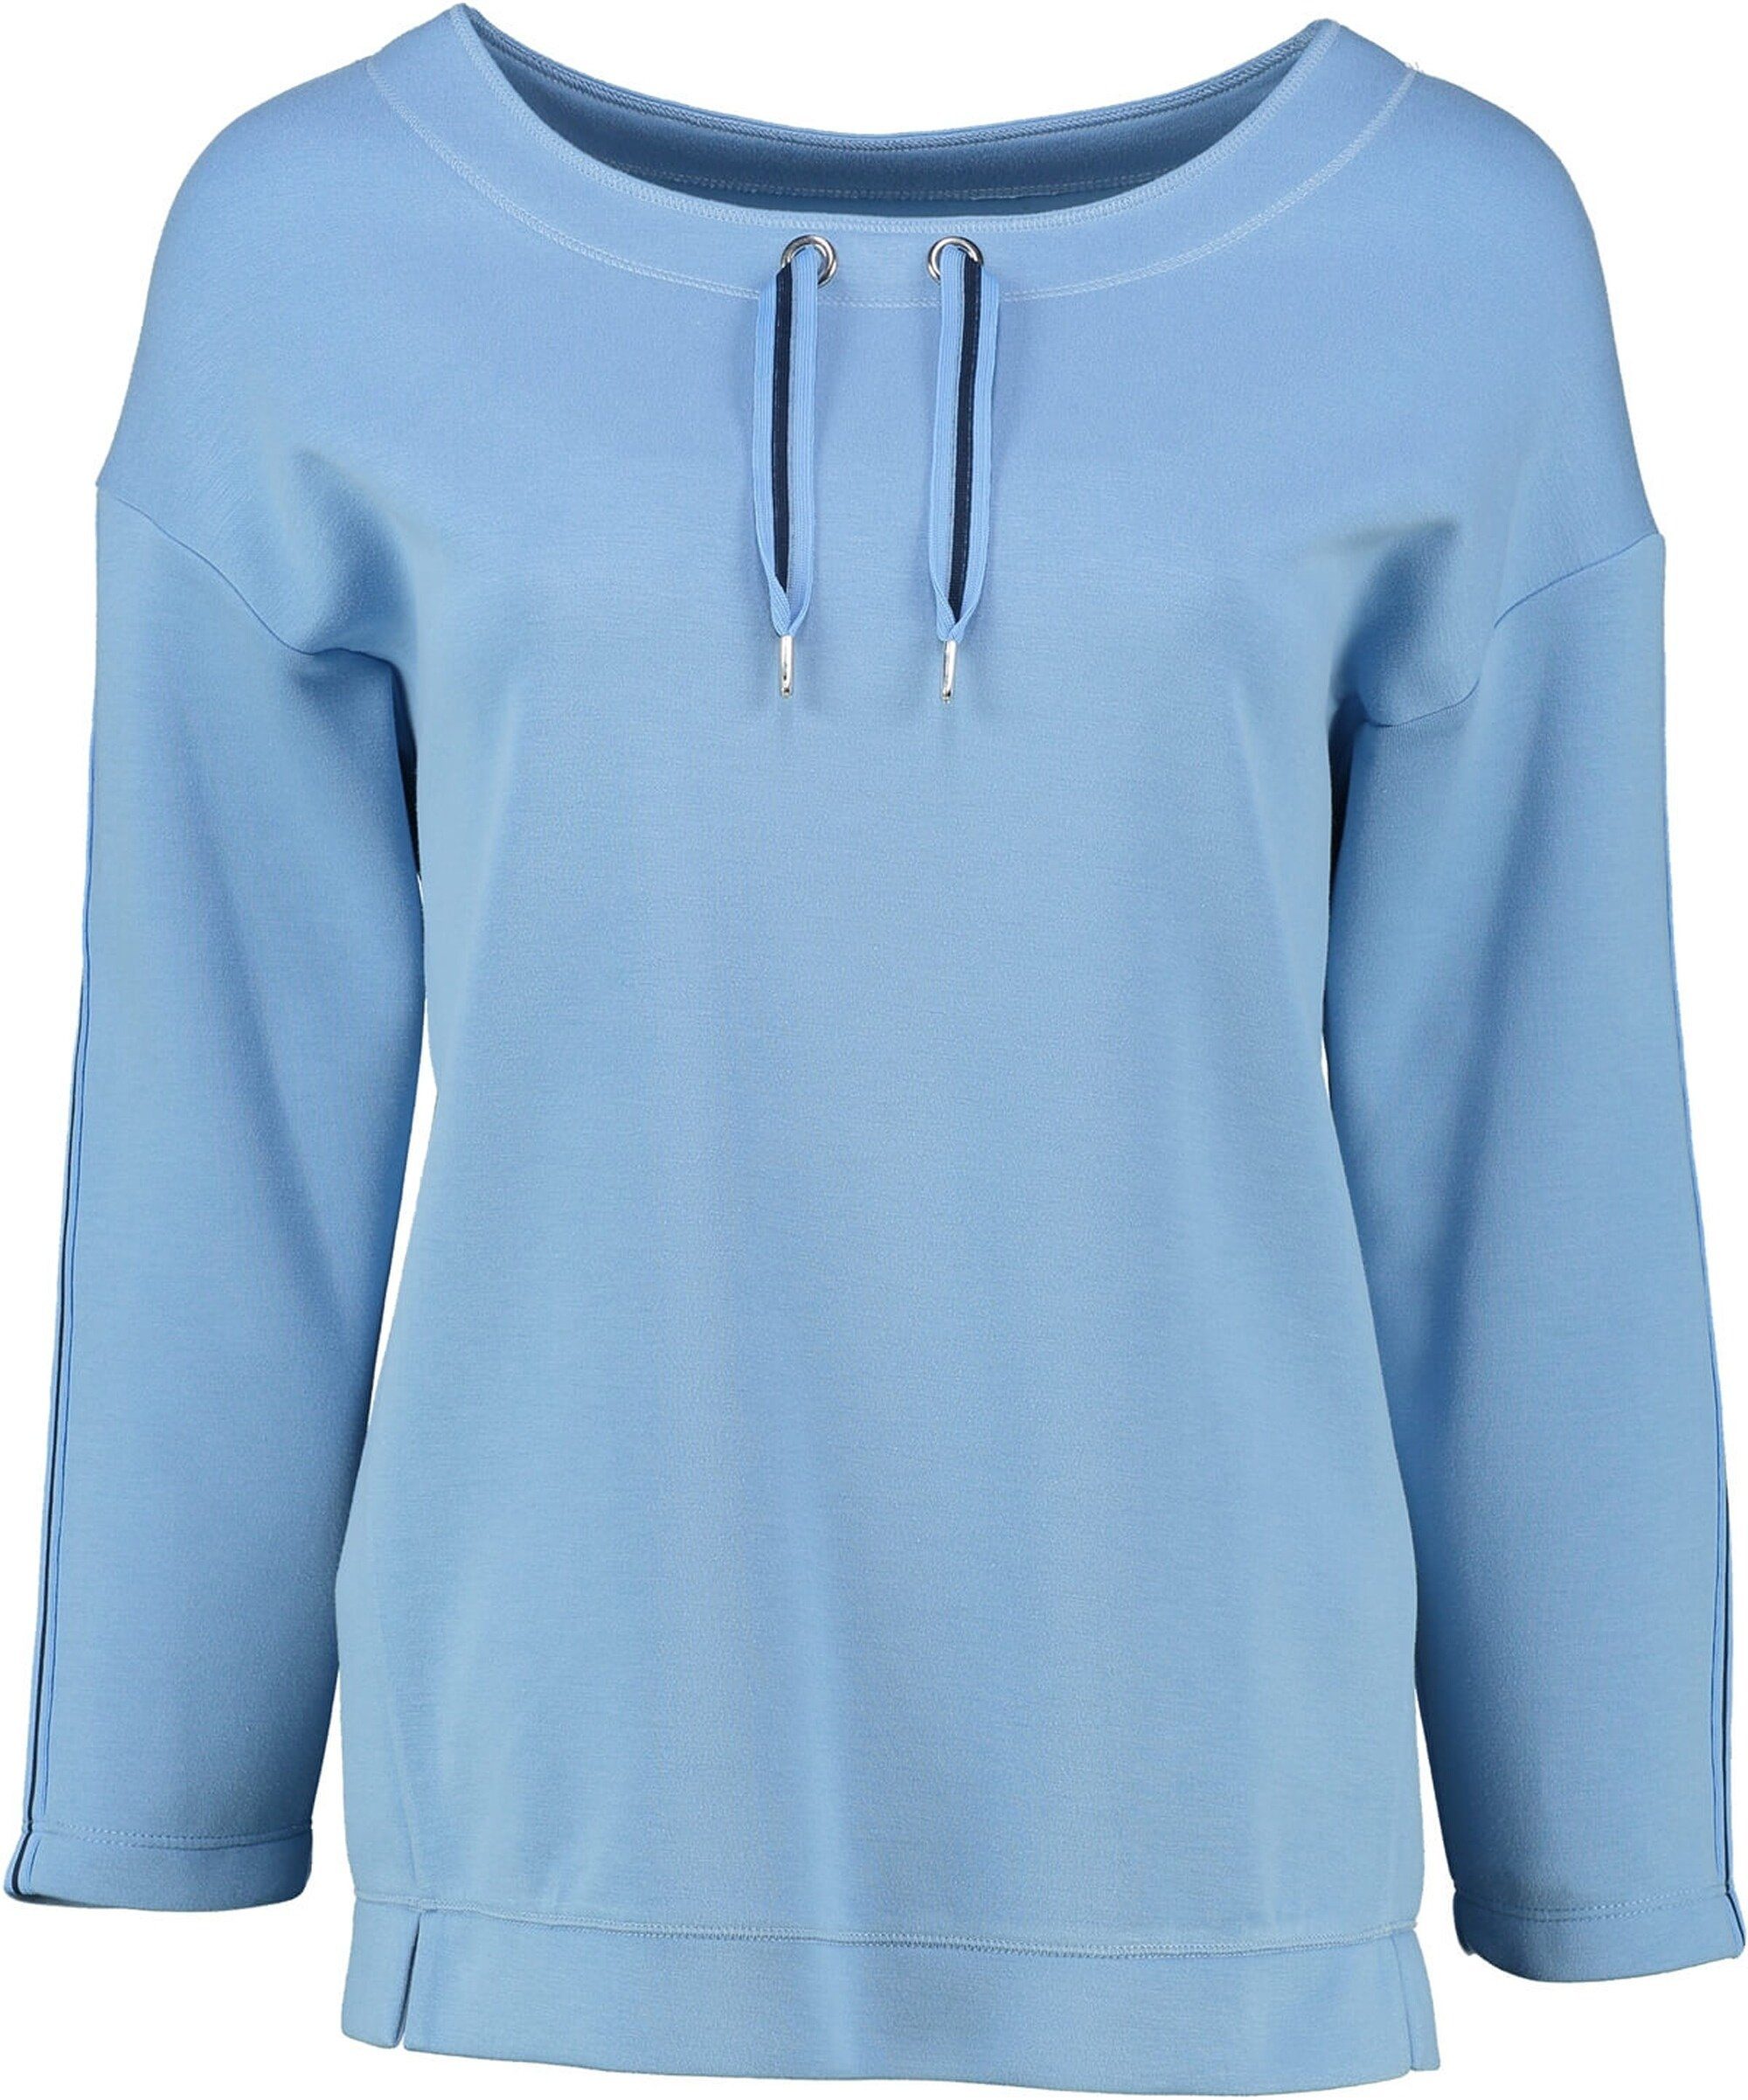 Strickpullover Qualität Rabe blau softer RABE Jersey-Shirt 3/4-Arm in